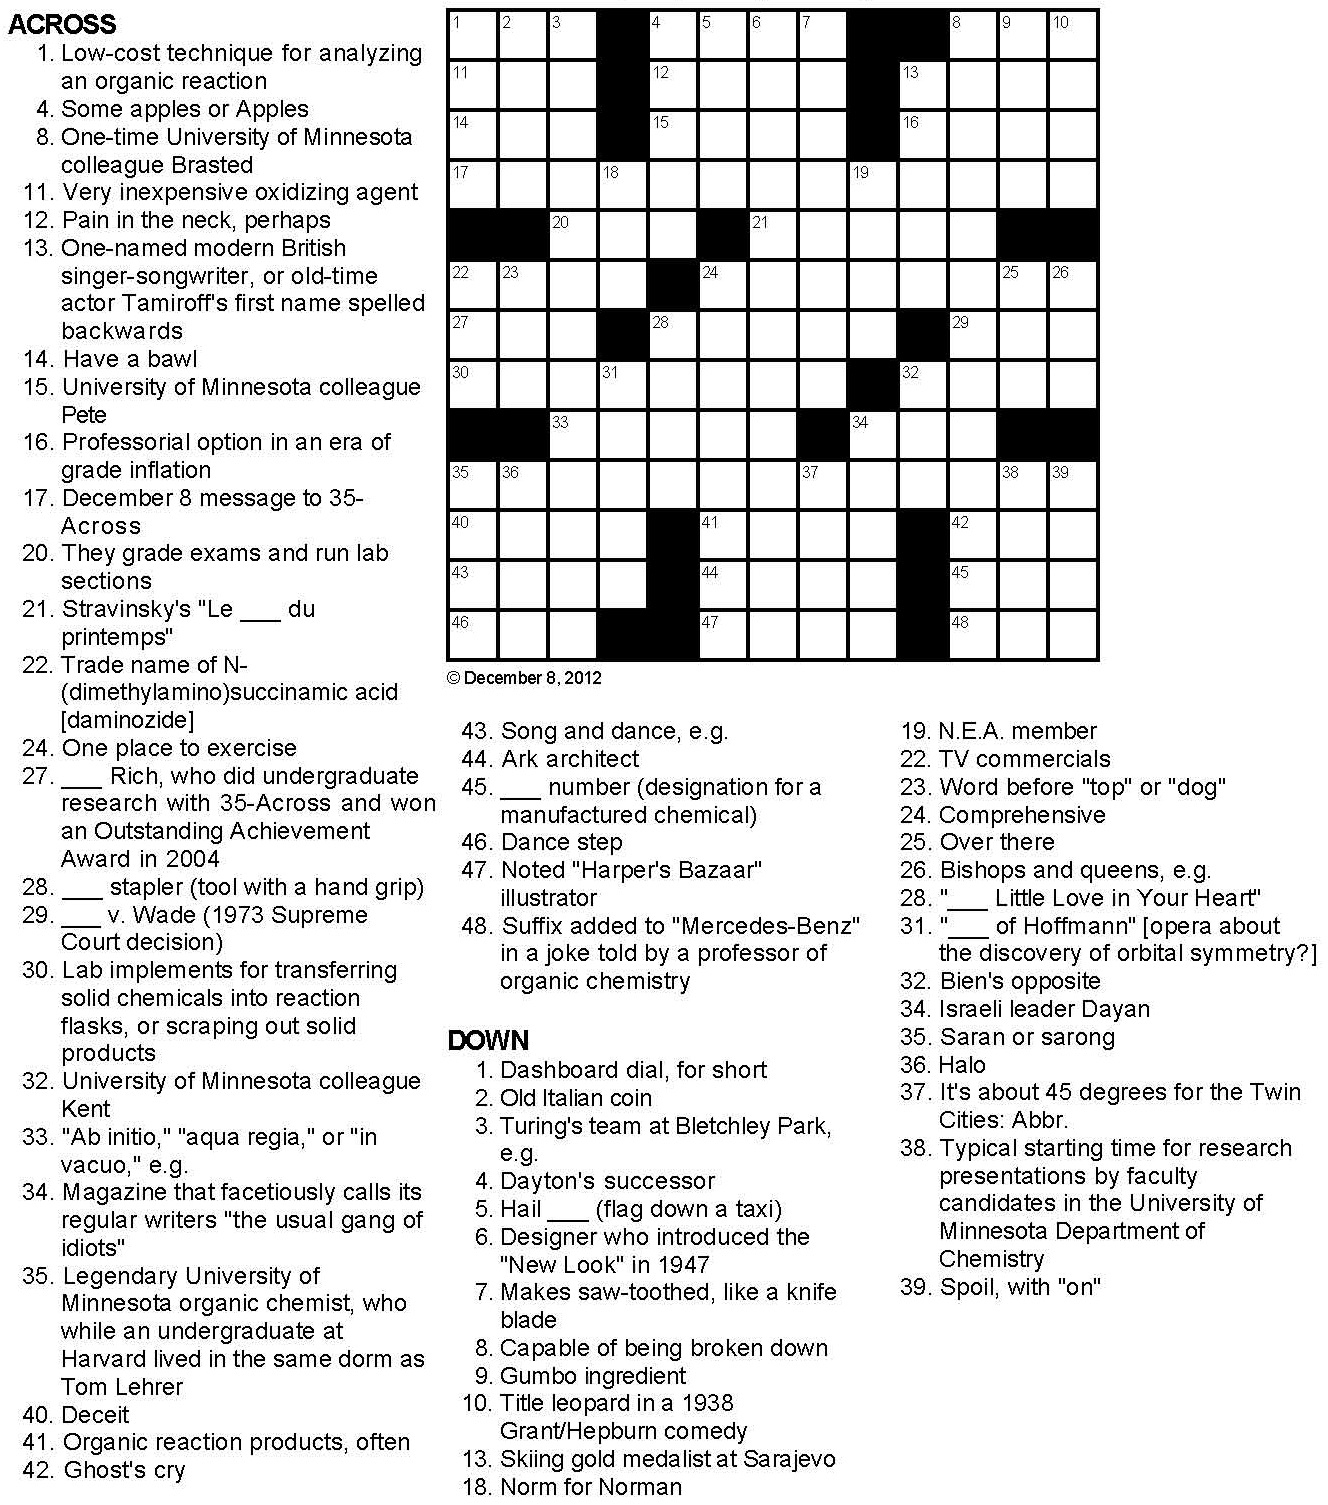 printable-uk-crossword-puzzles-printable-crossword-puzzles